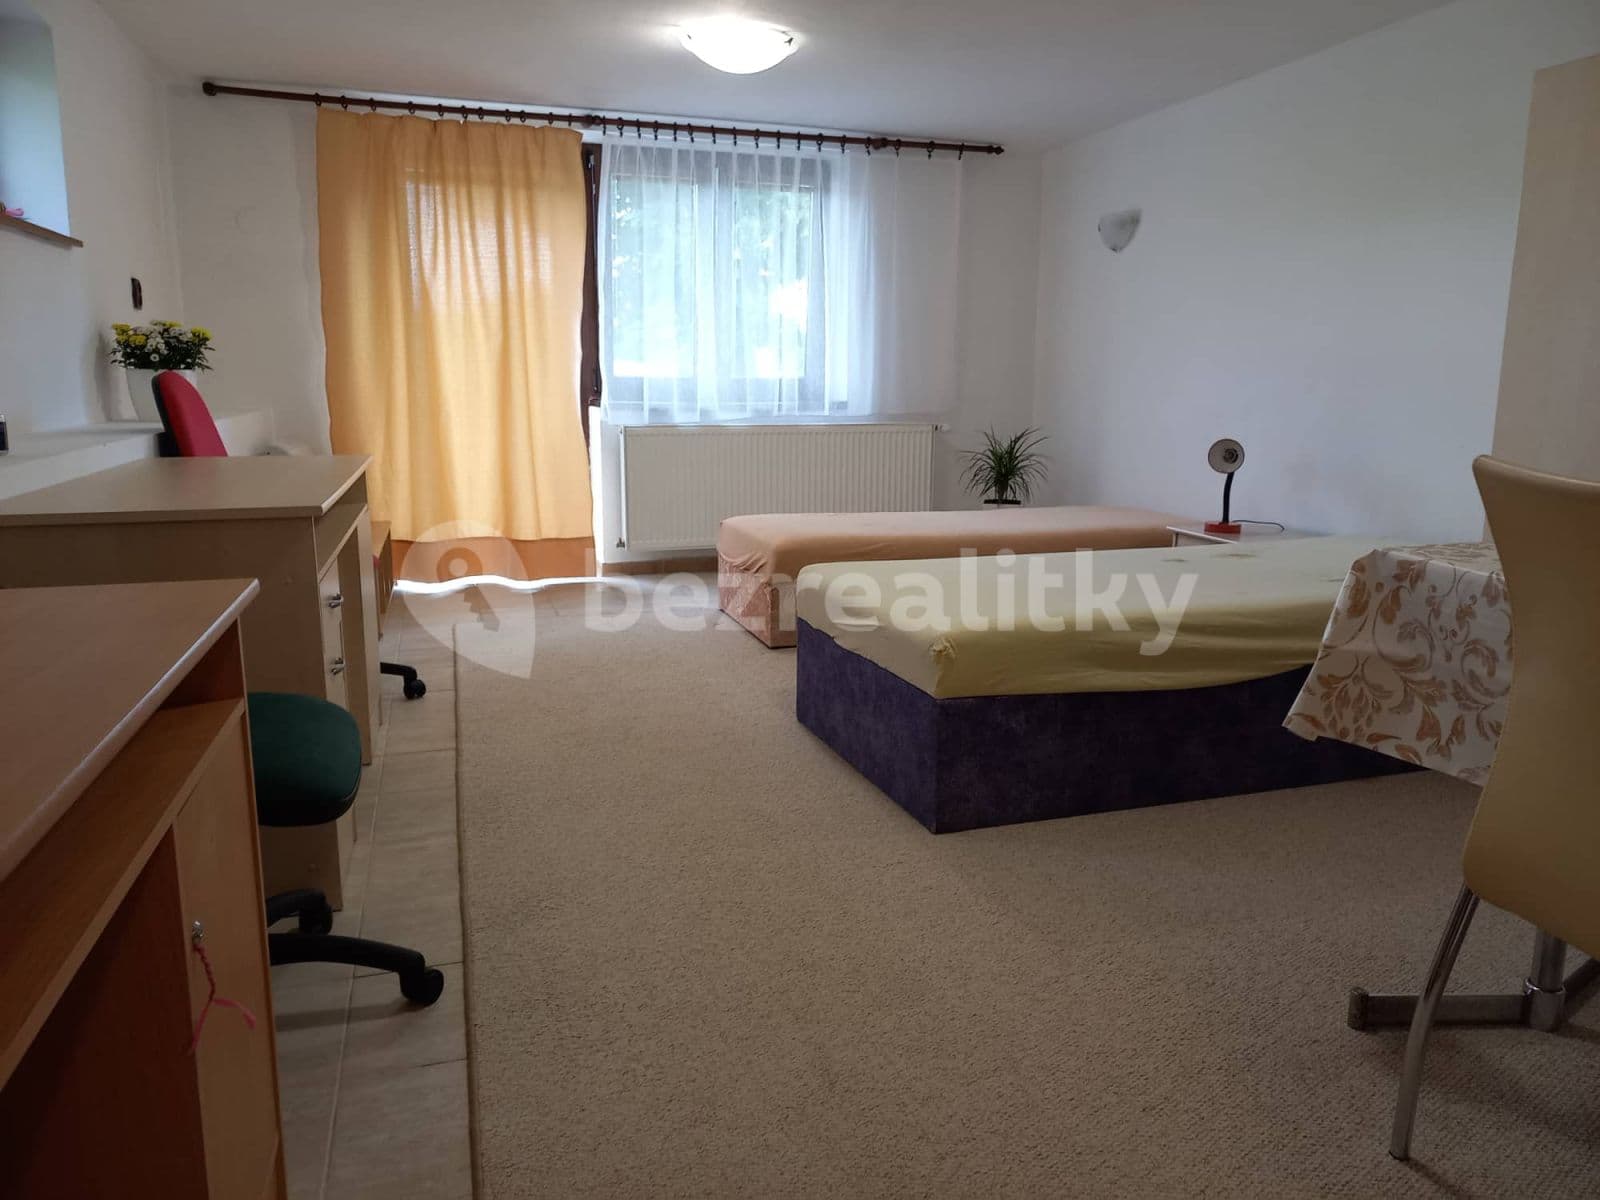 1 bedroom flat to rent, 40 m², Luční, Rudolfov, Jihočeský Region